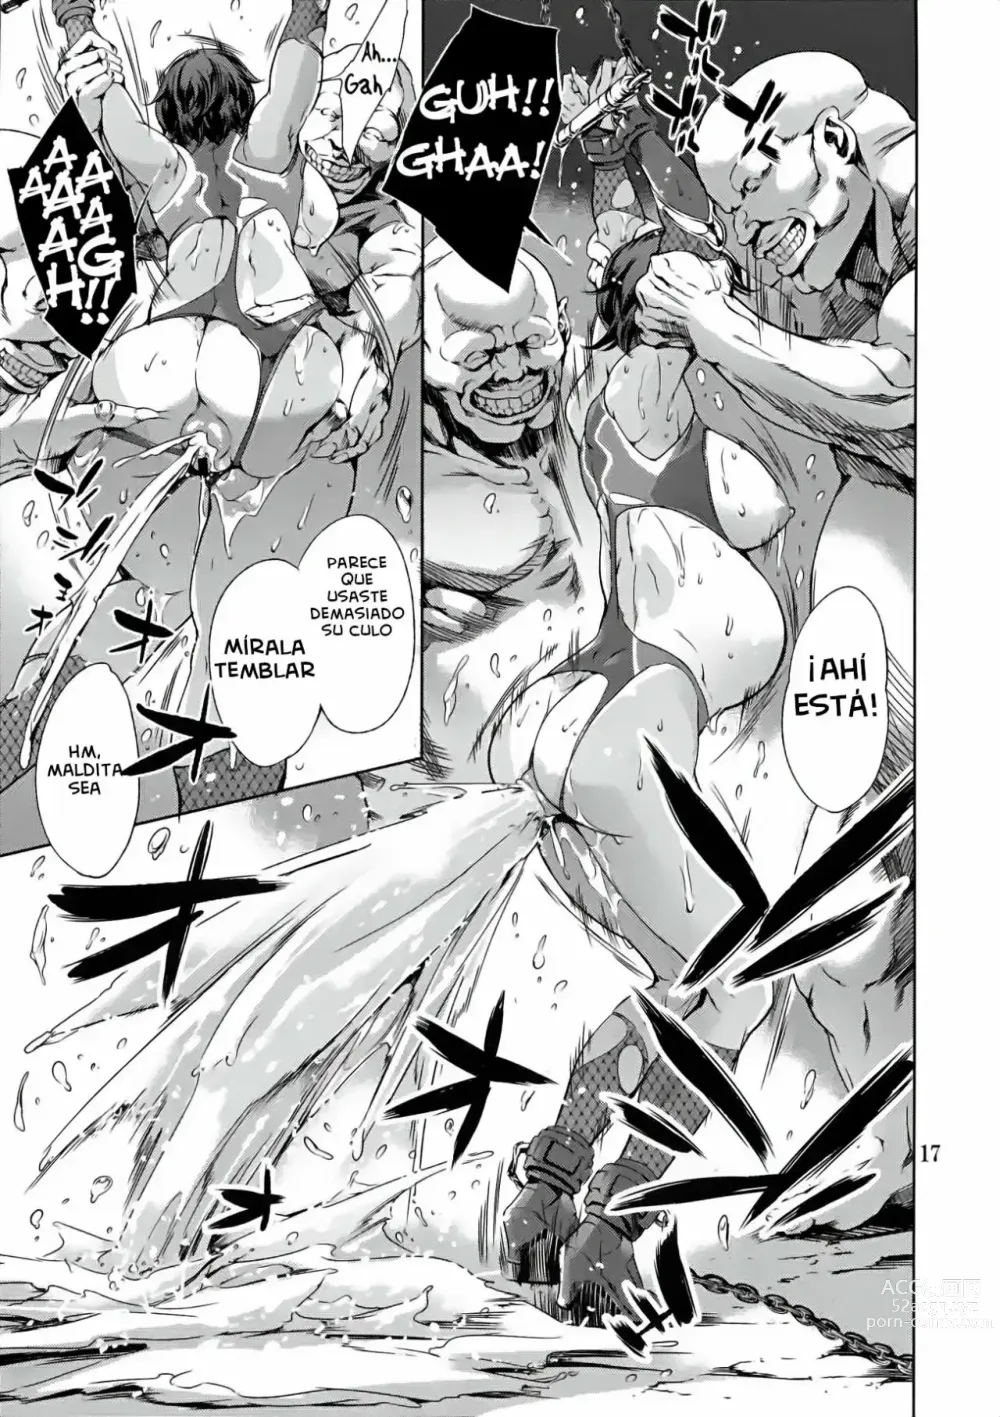 Page 17 of doujinshi REN